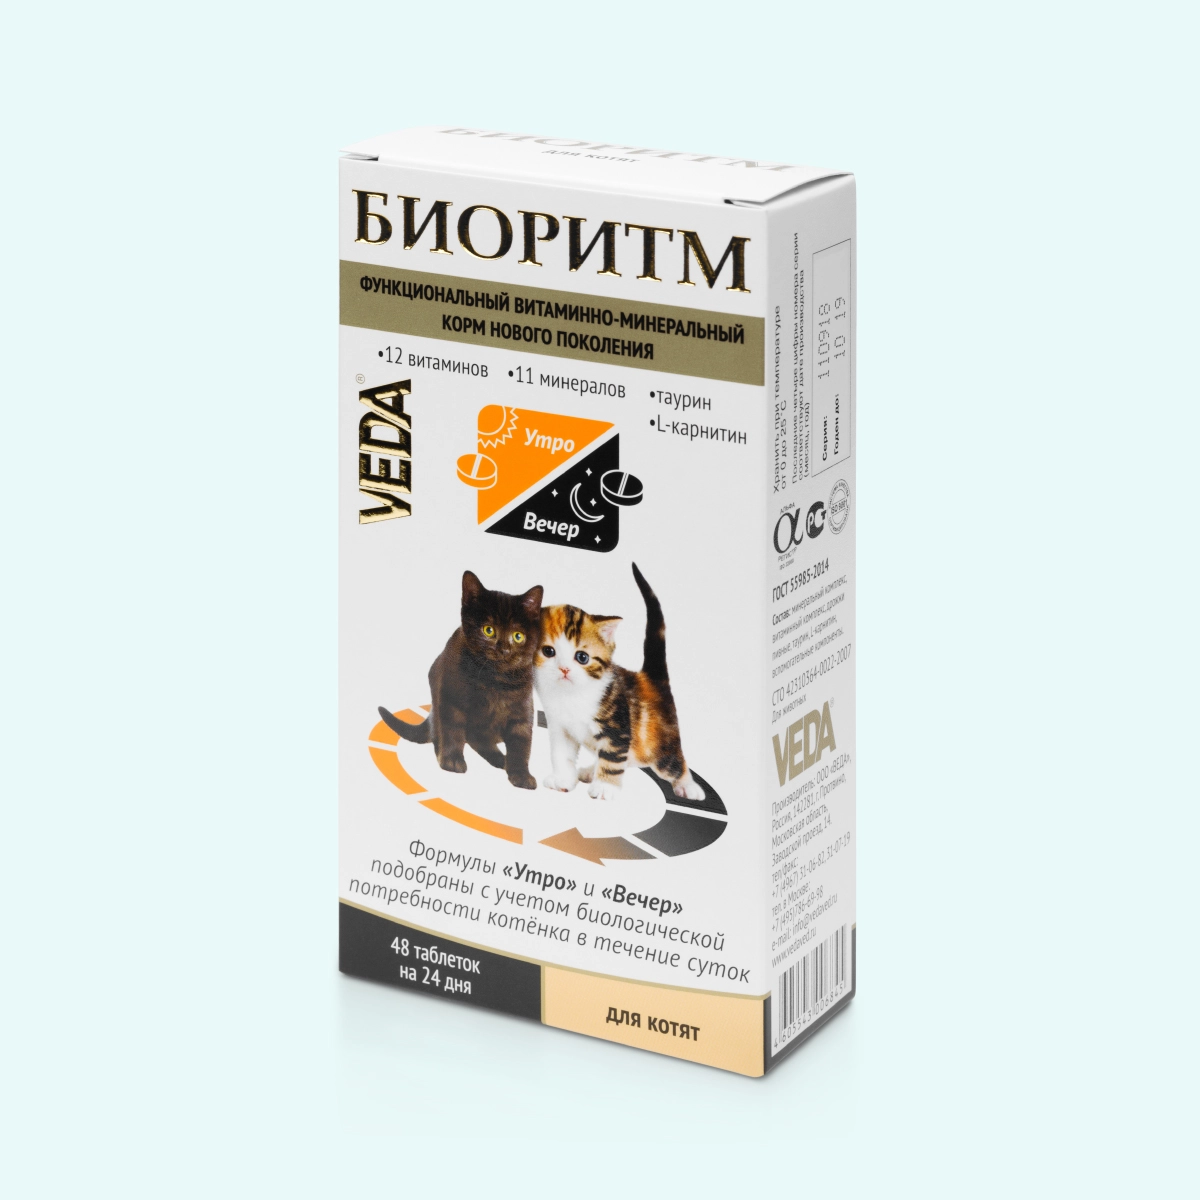 Витаминно-минеральный комплекс для котят БИОРИТМ